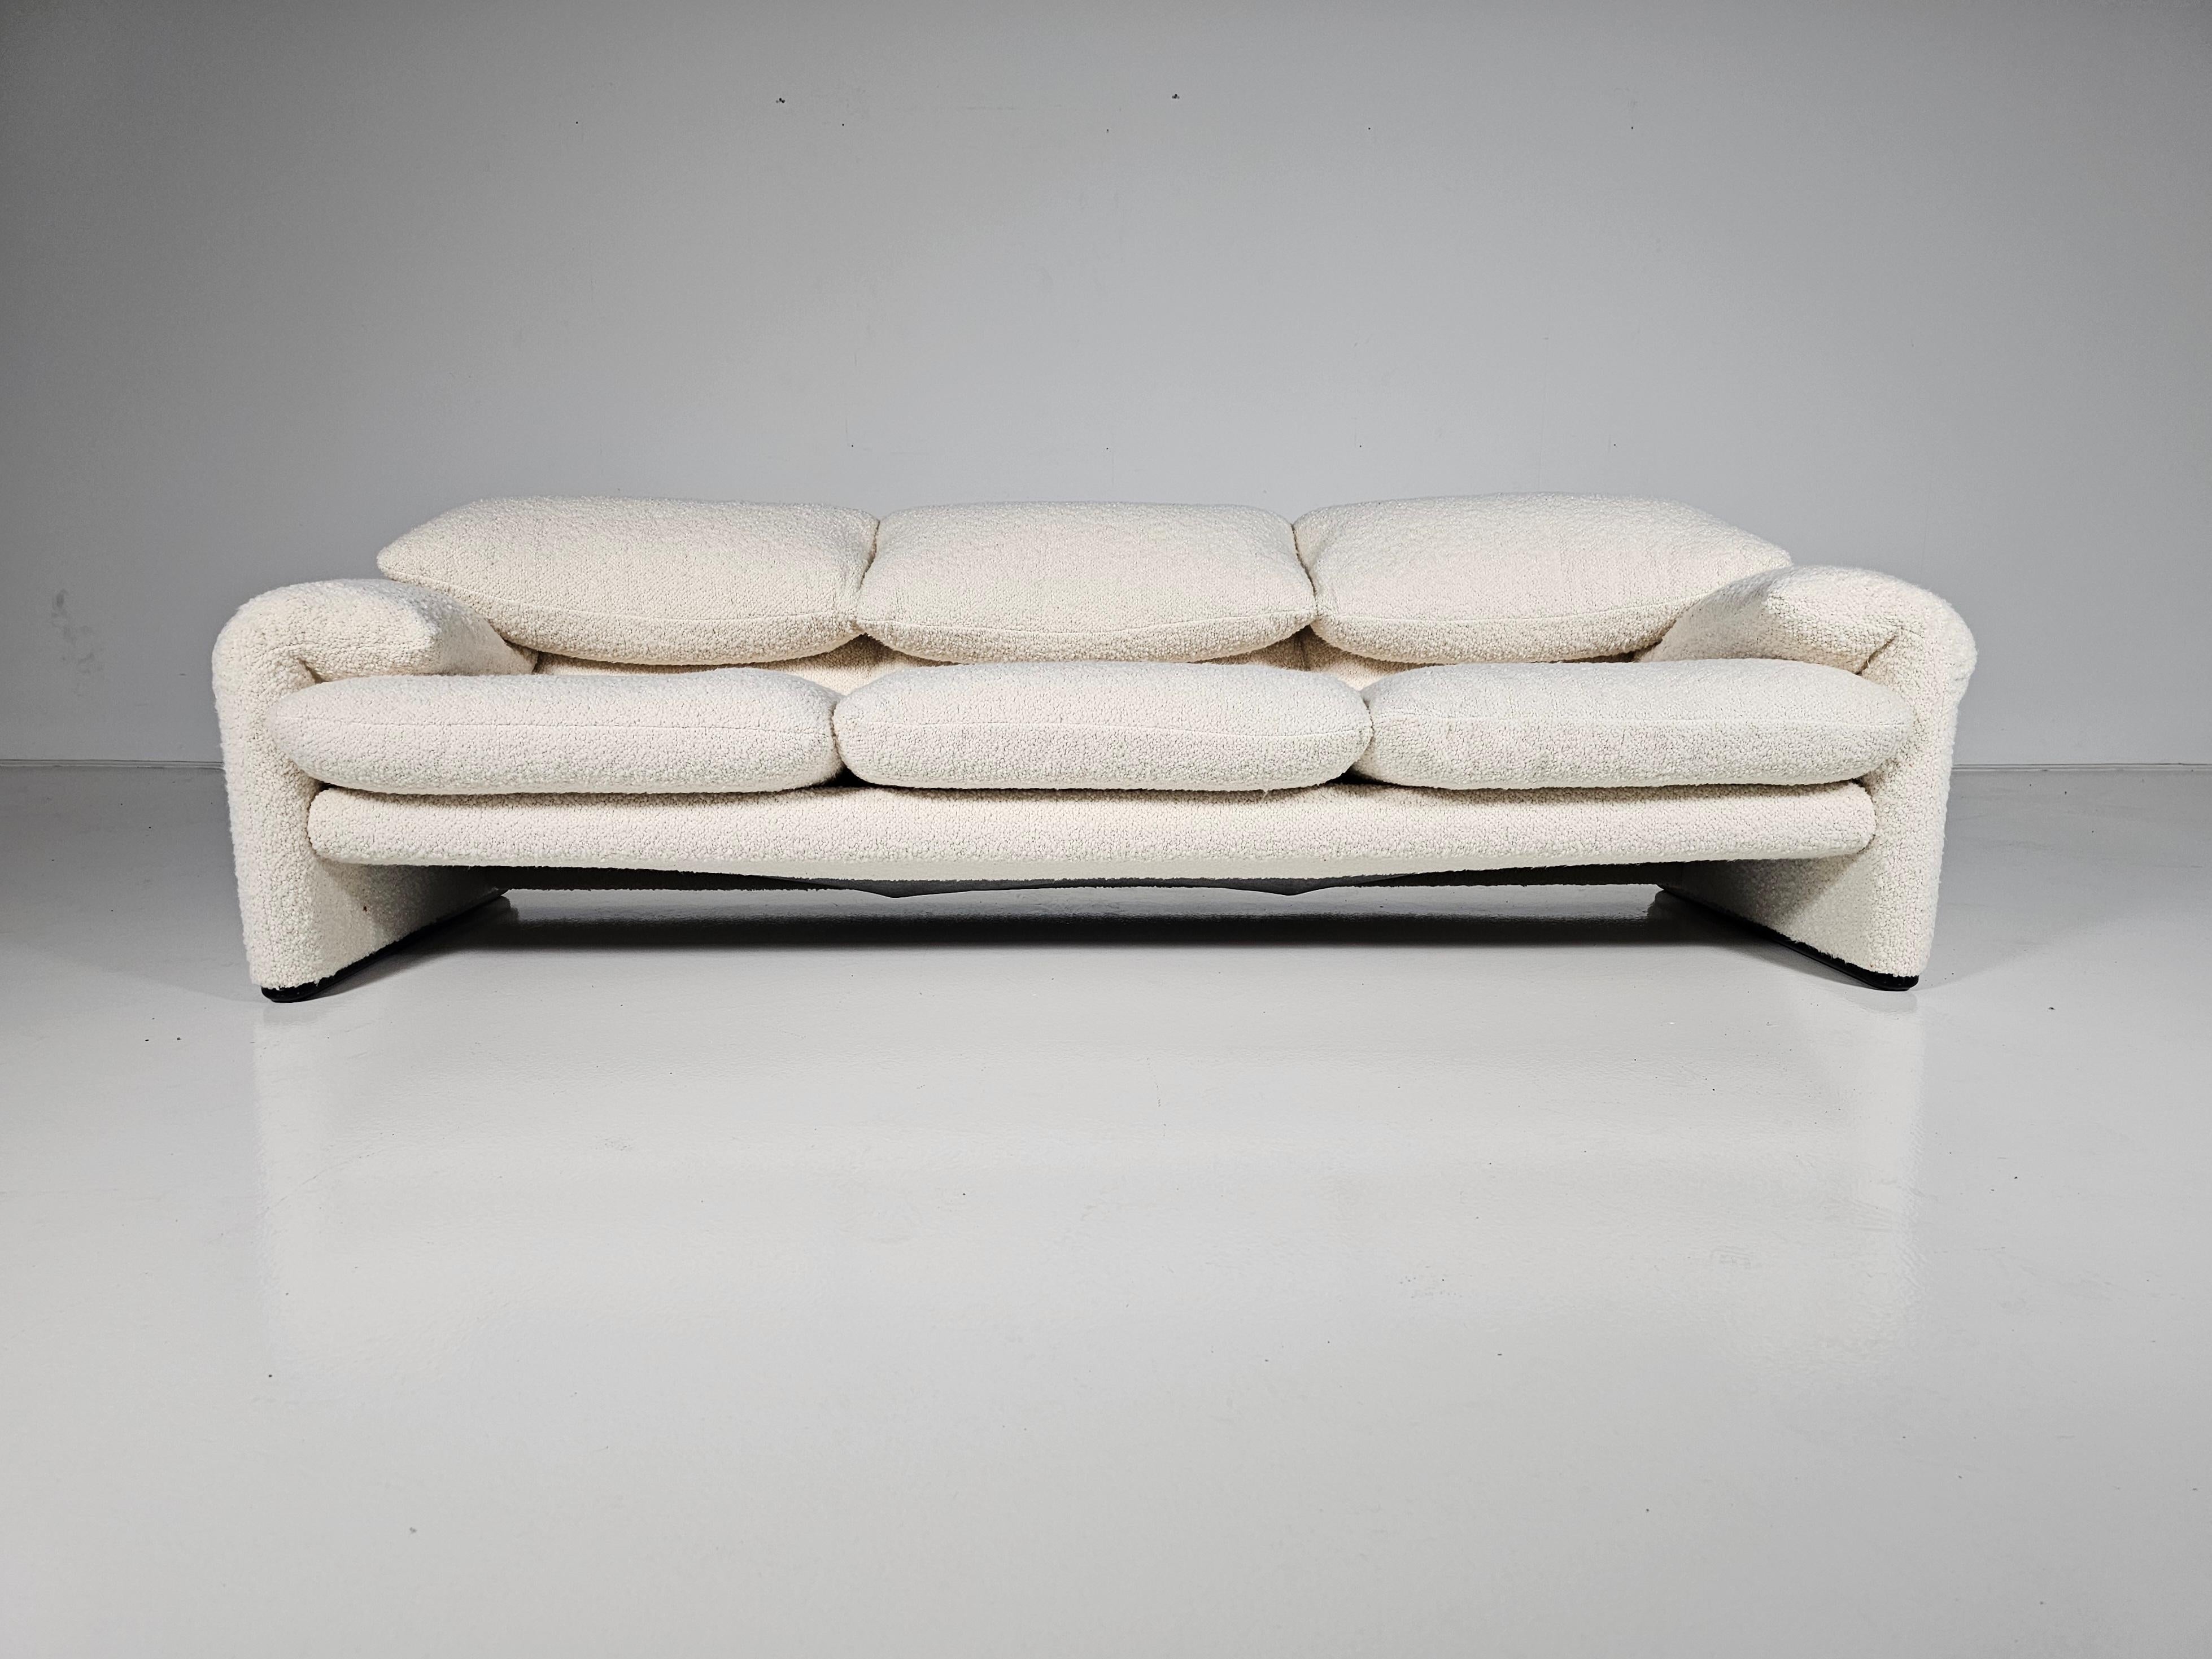 Dieses Maralunga-Sofa wurde 1973 von Vico Magistretti für Cassina entworfen. Dies ist eine Originalversion aus den siebziger Jahren. Neu gepolstert mit cremefarbenem, flauschigem Bouclé. Mit Stahlkonstruktion. Die Rückenlehne kann hochgeklappt oder